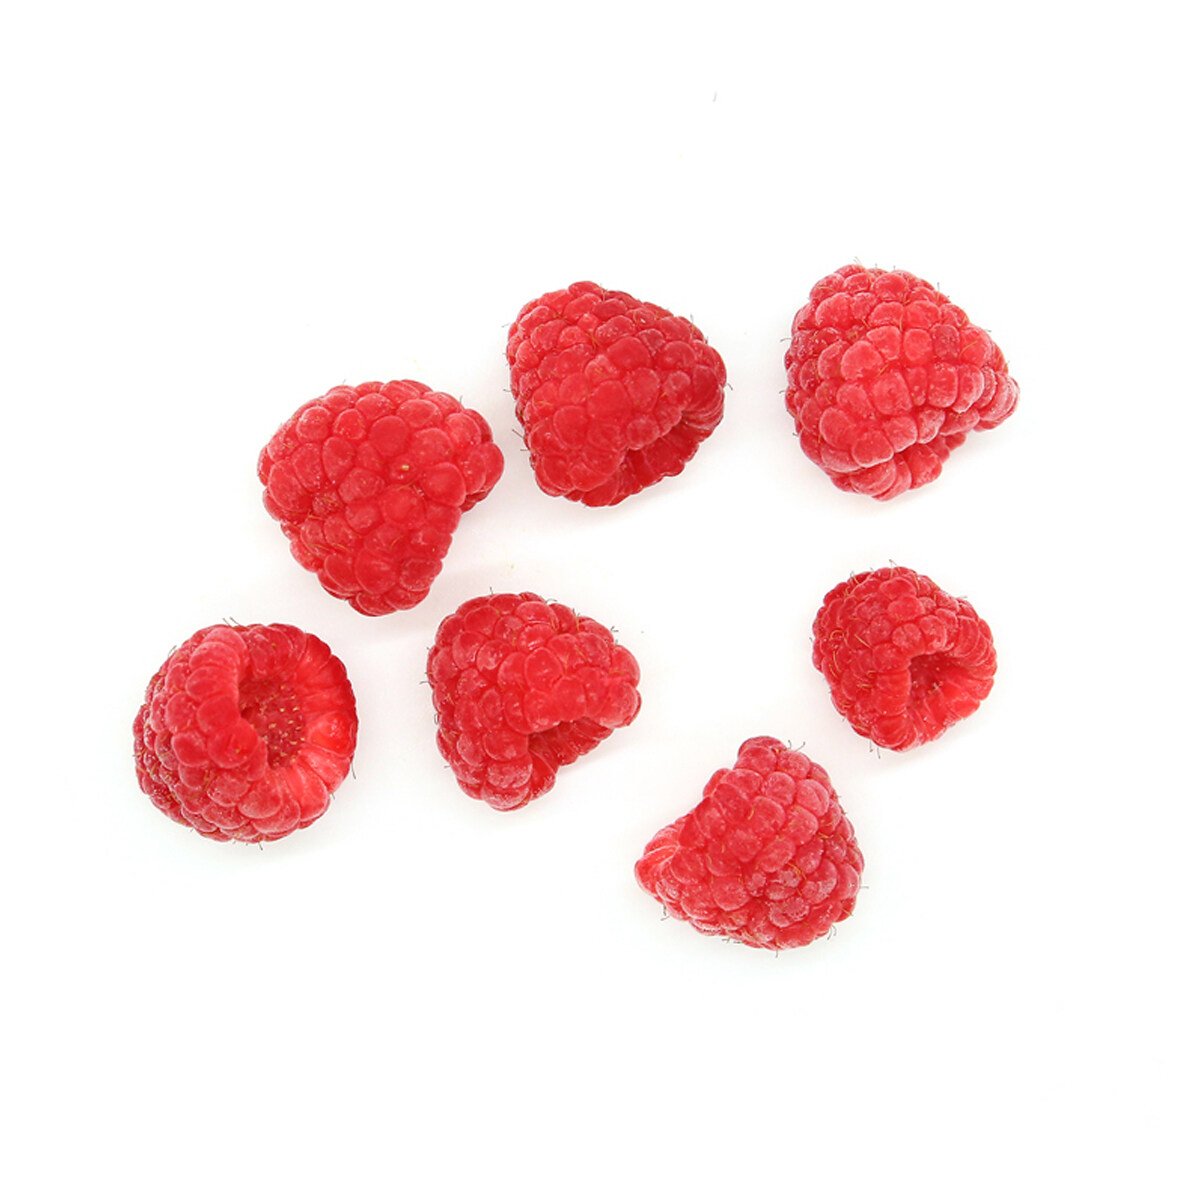 Raspberry Raspberry ผลไม้แช่แข็ง, ราสเบอร์รี่ที่กำหนดเองแบบแช่แข็งอินทรีย์, โรงงานผลิตน้ำซุปข้นราสเบอร์รี่แช่แข็ง, ผู้ผลิตเยื่อกระดาษราสเบอร์รี่แช่แข็ง, อาหารแช่แข็ง iqf ราสเบอร์รี่